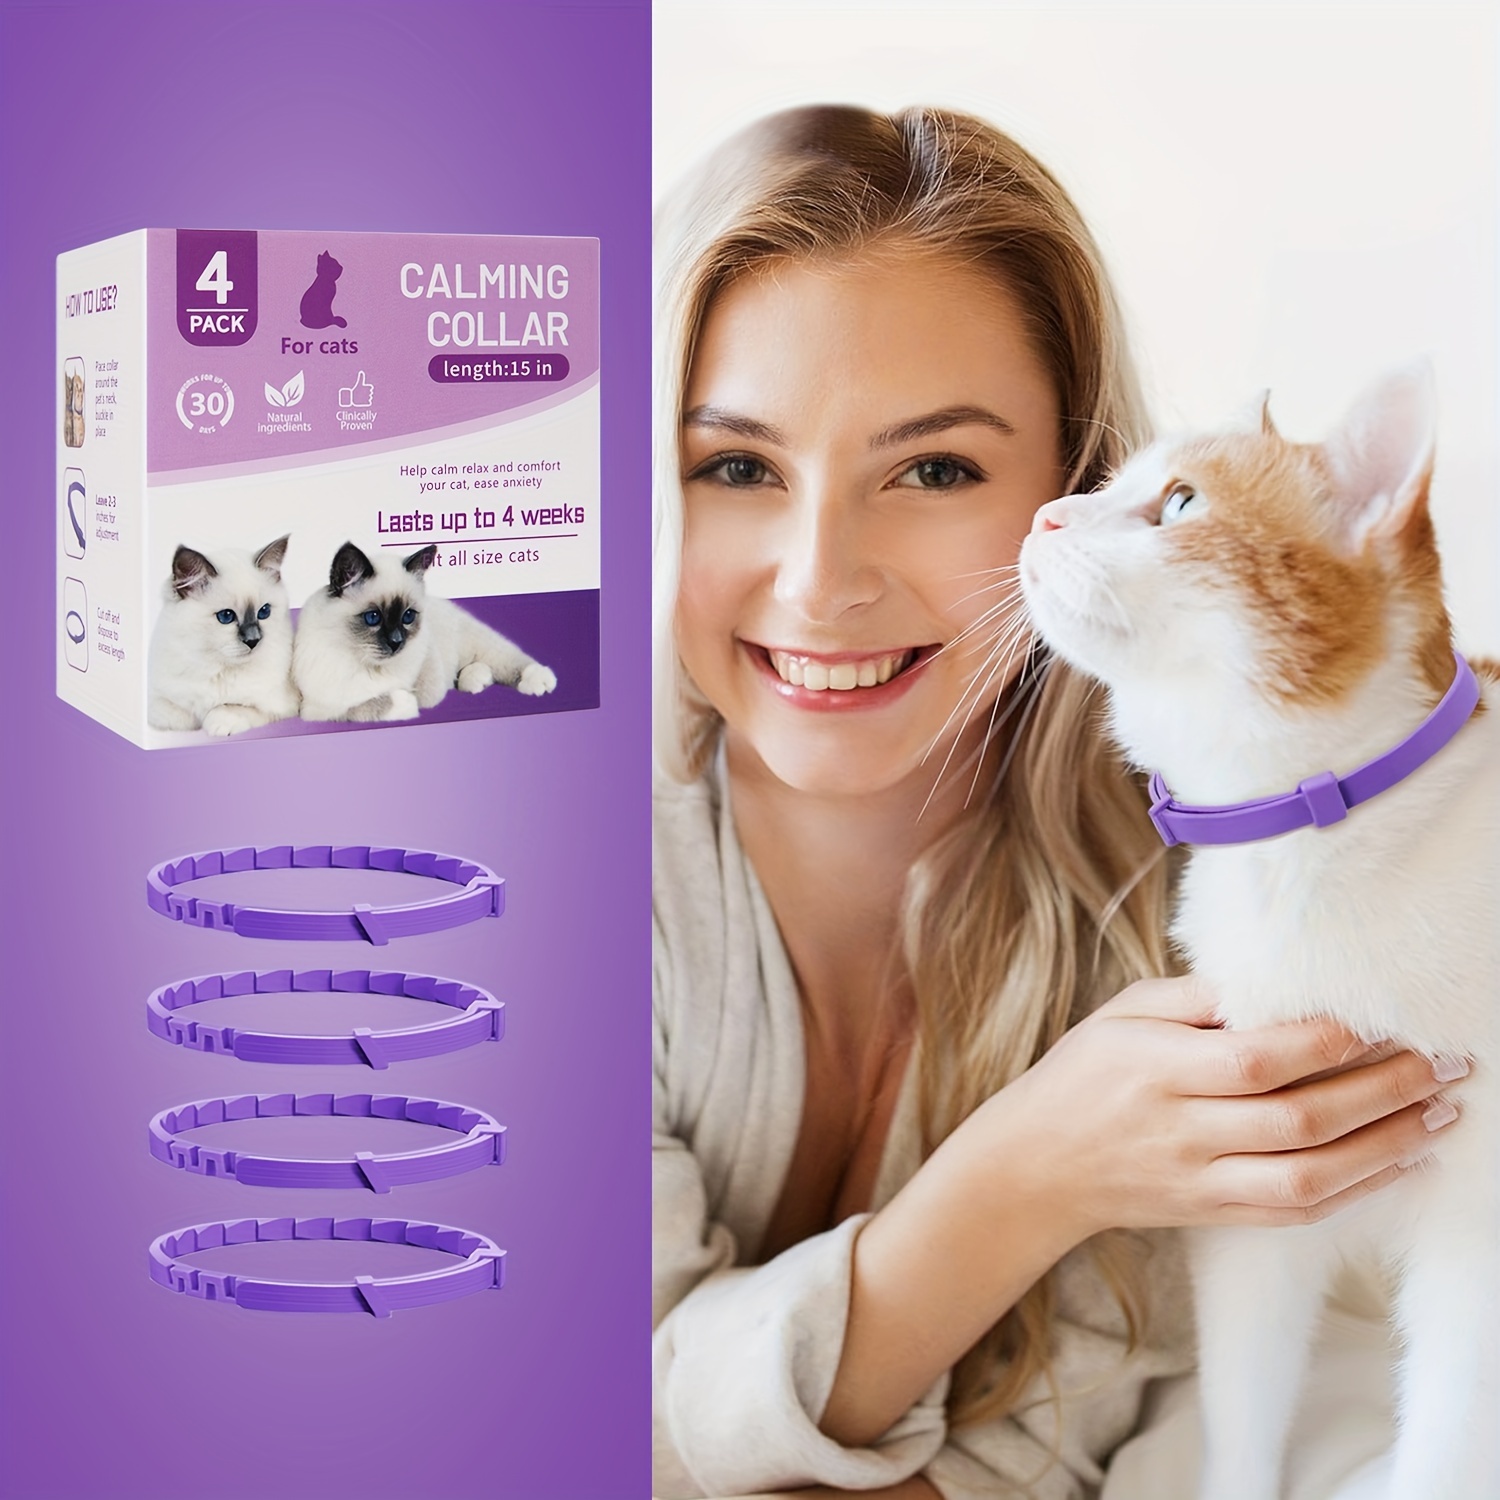 Paquete de 3 collares calmantes para gatos y gatitos Collar de feromonas  Eficiente Aliviar Reduce la ansiedad Estrés Feromonas Calma Relajante  Cómodo collares separables